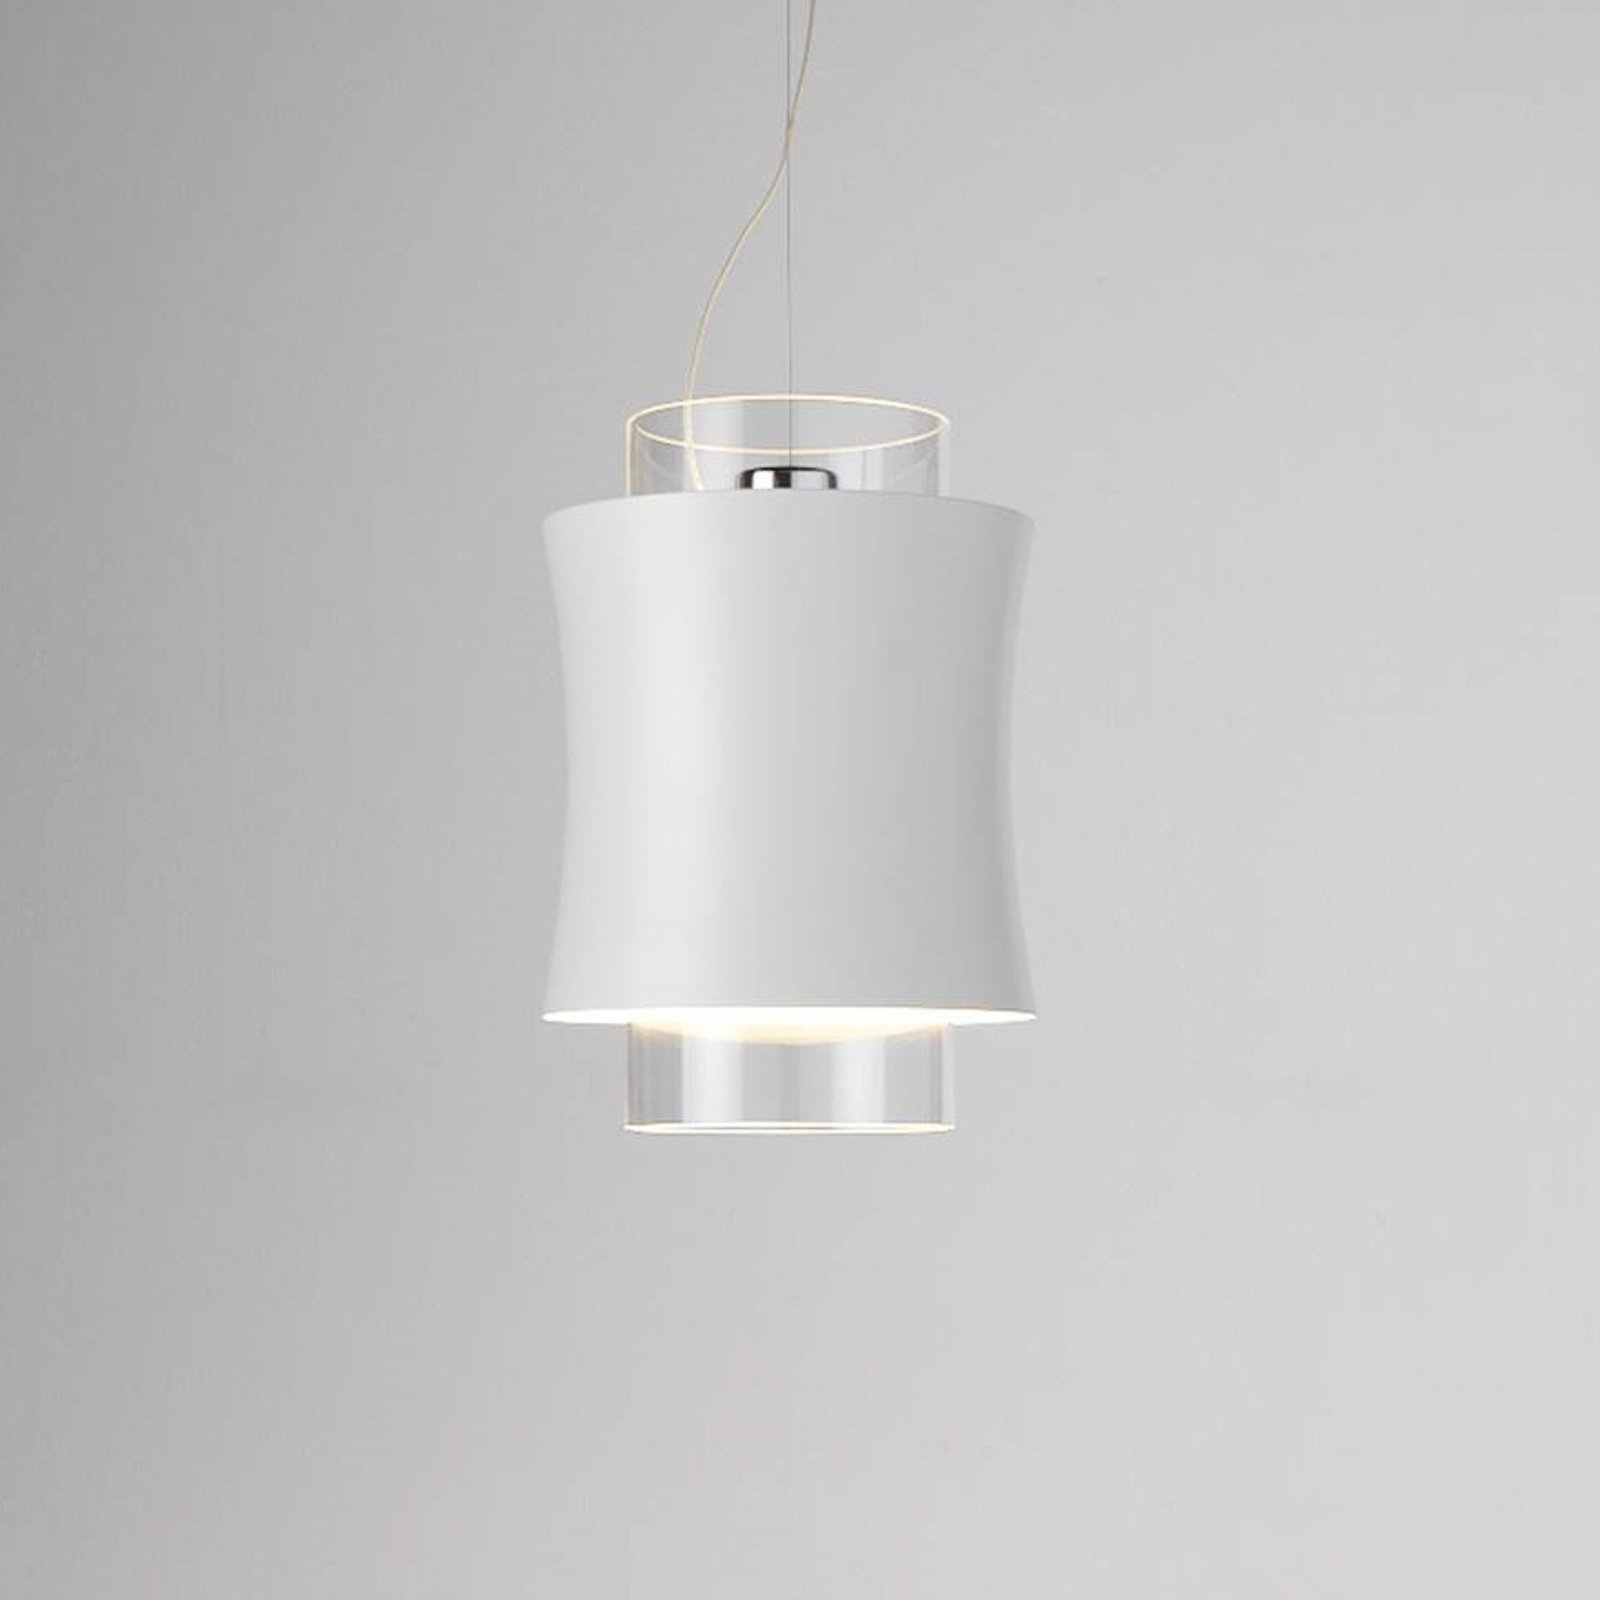 Prandina Fez S1 lampă suspendată alb mat